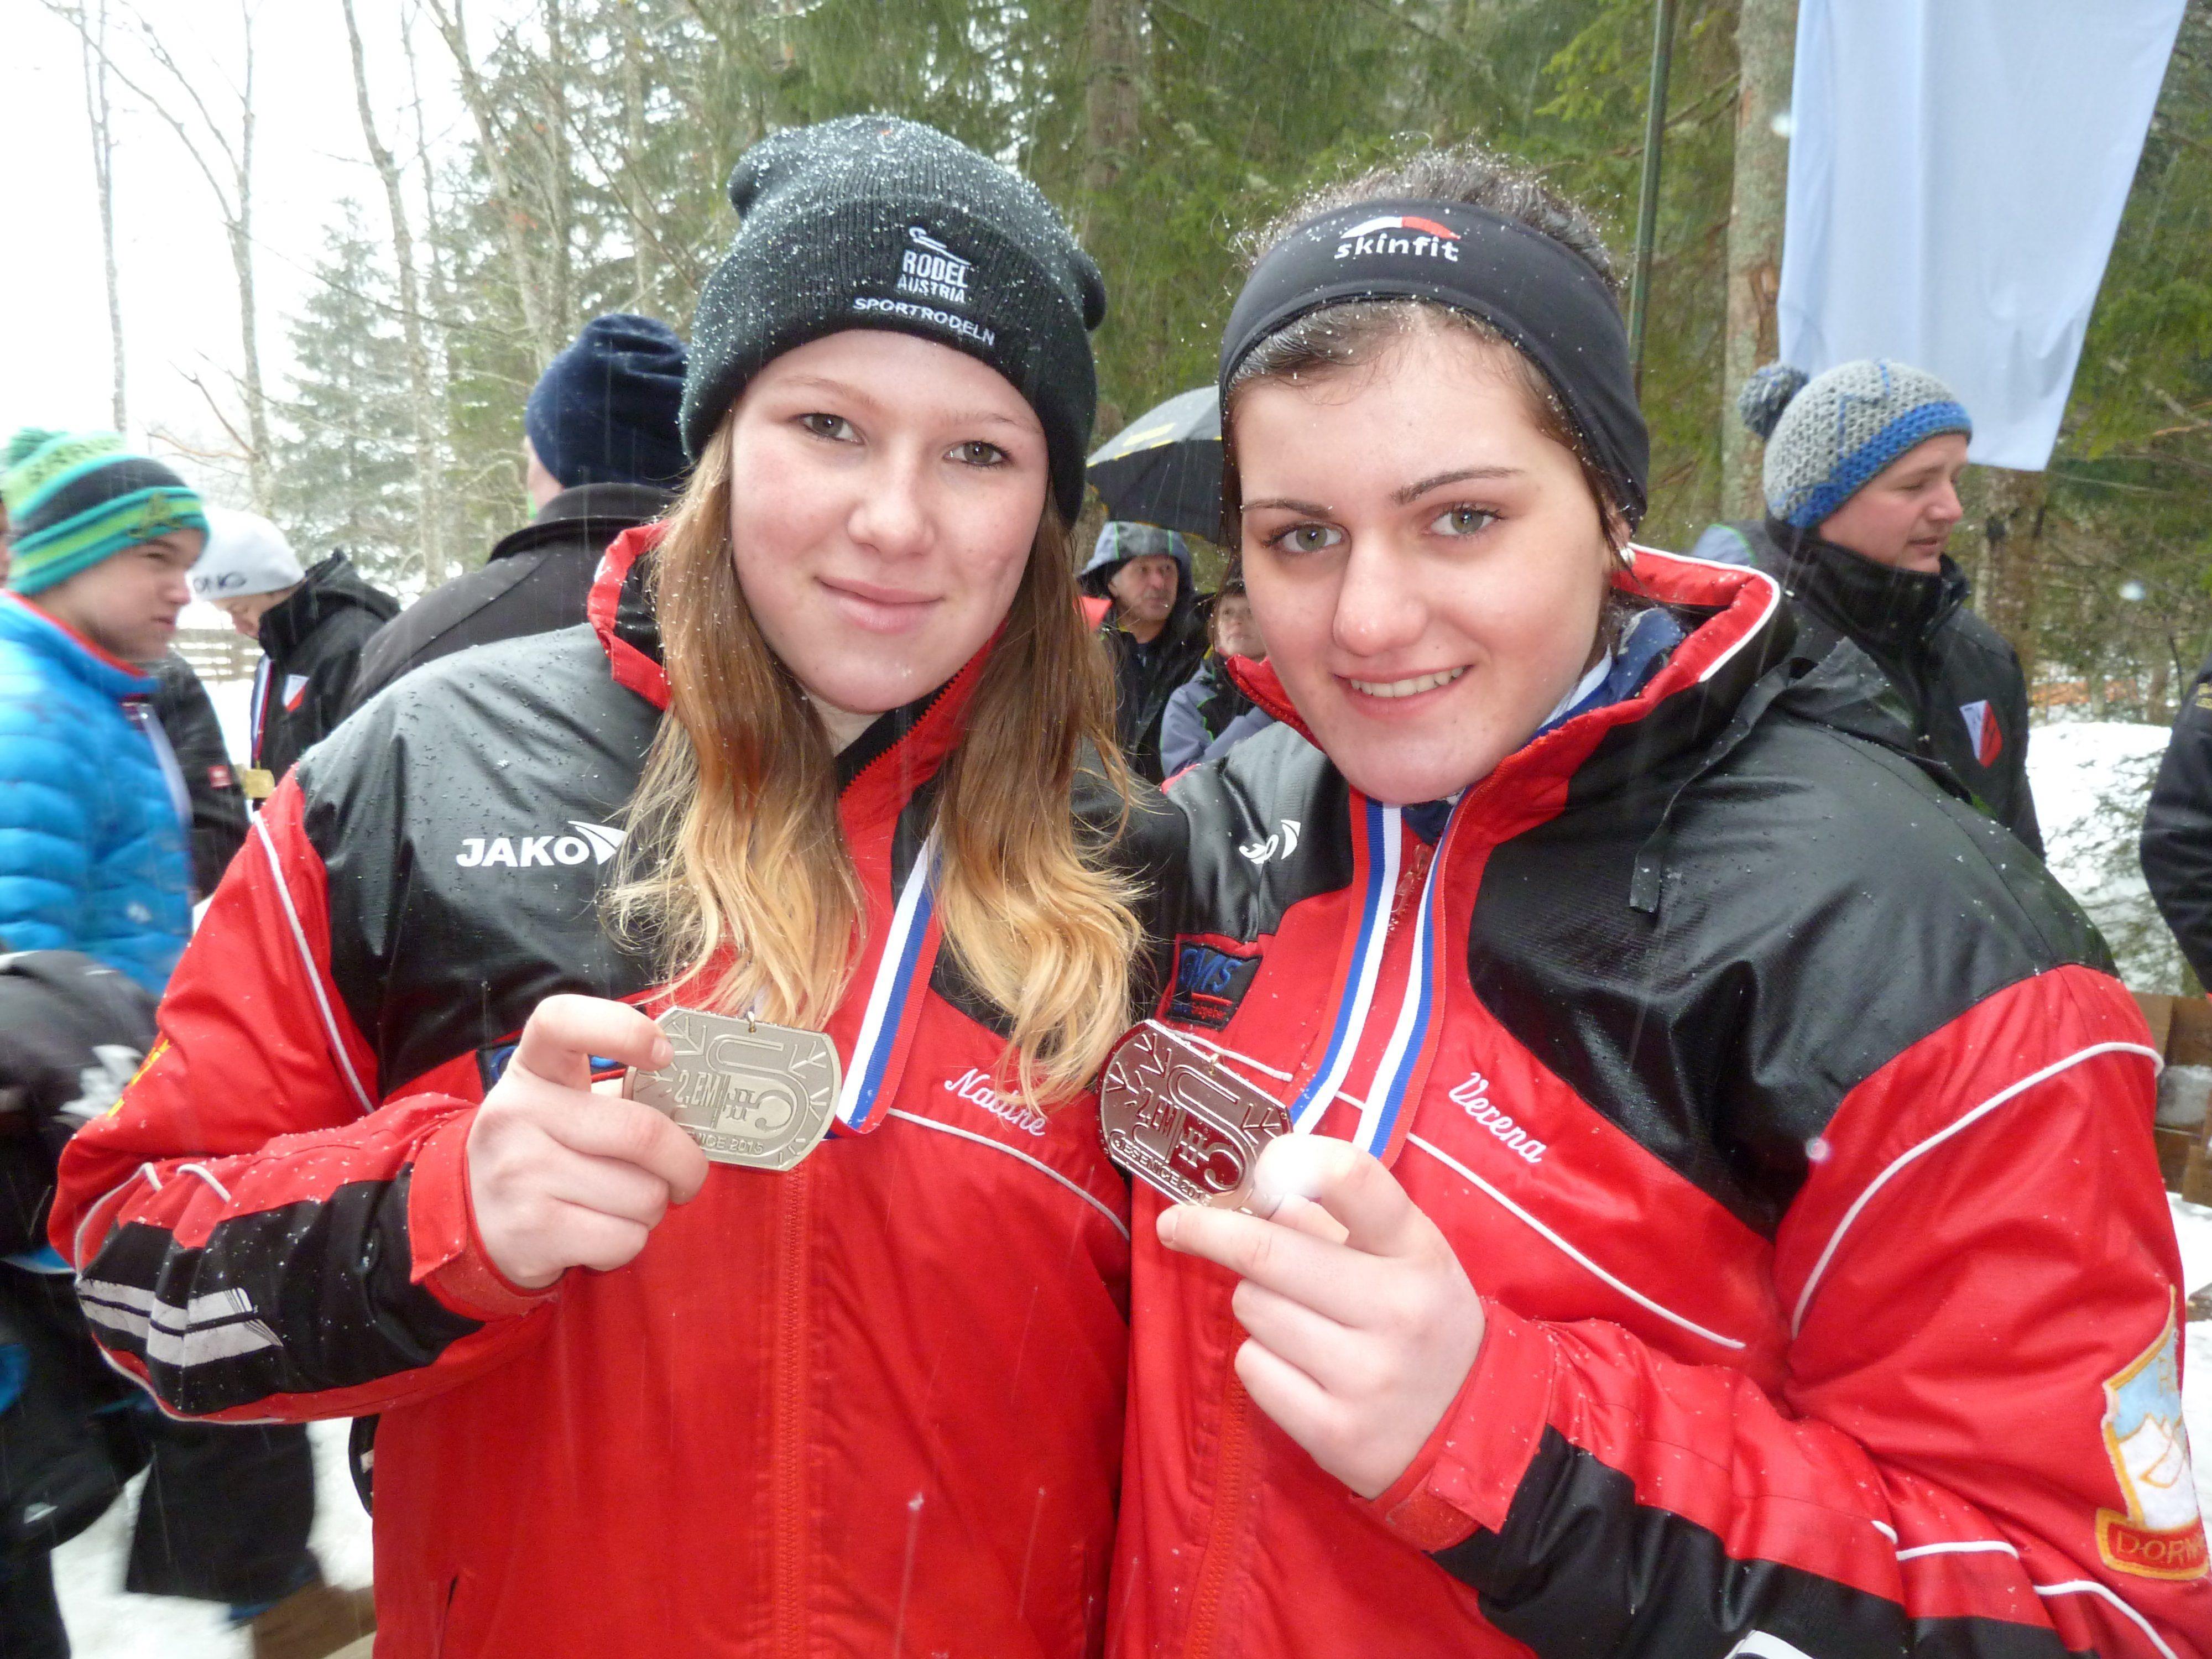 Die Silbermedailen Gewinnerinnen des RC Dornbirn, links Nadine Schwendinger, rechts Verena Wohlgeannnt